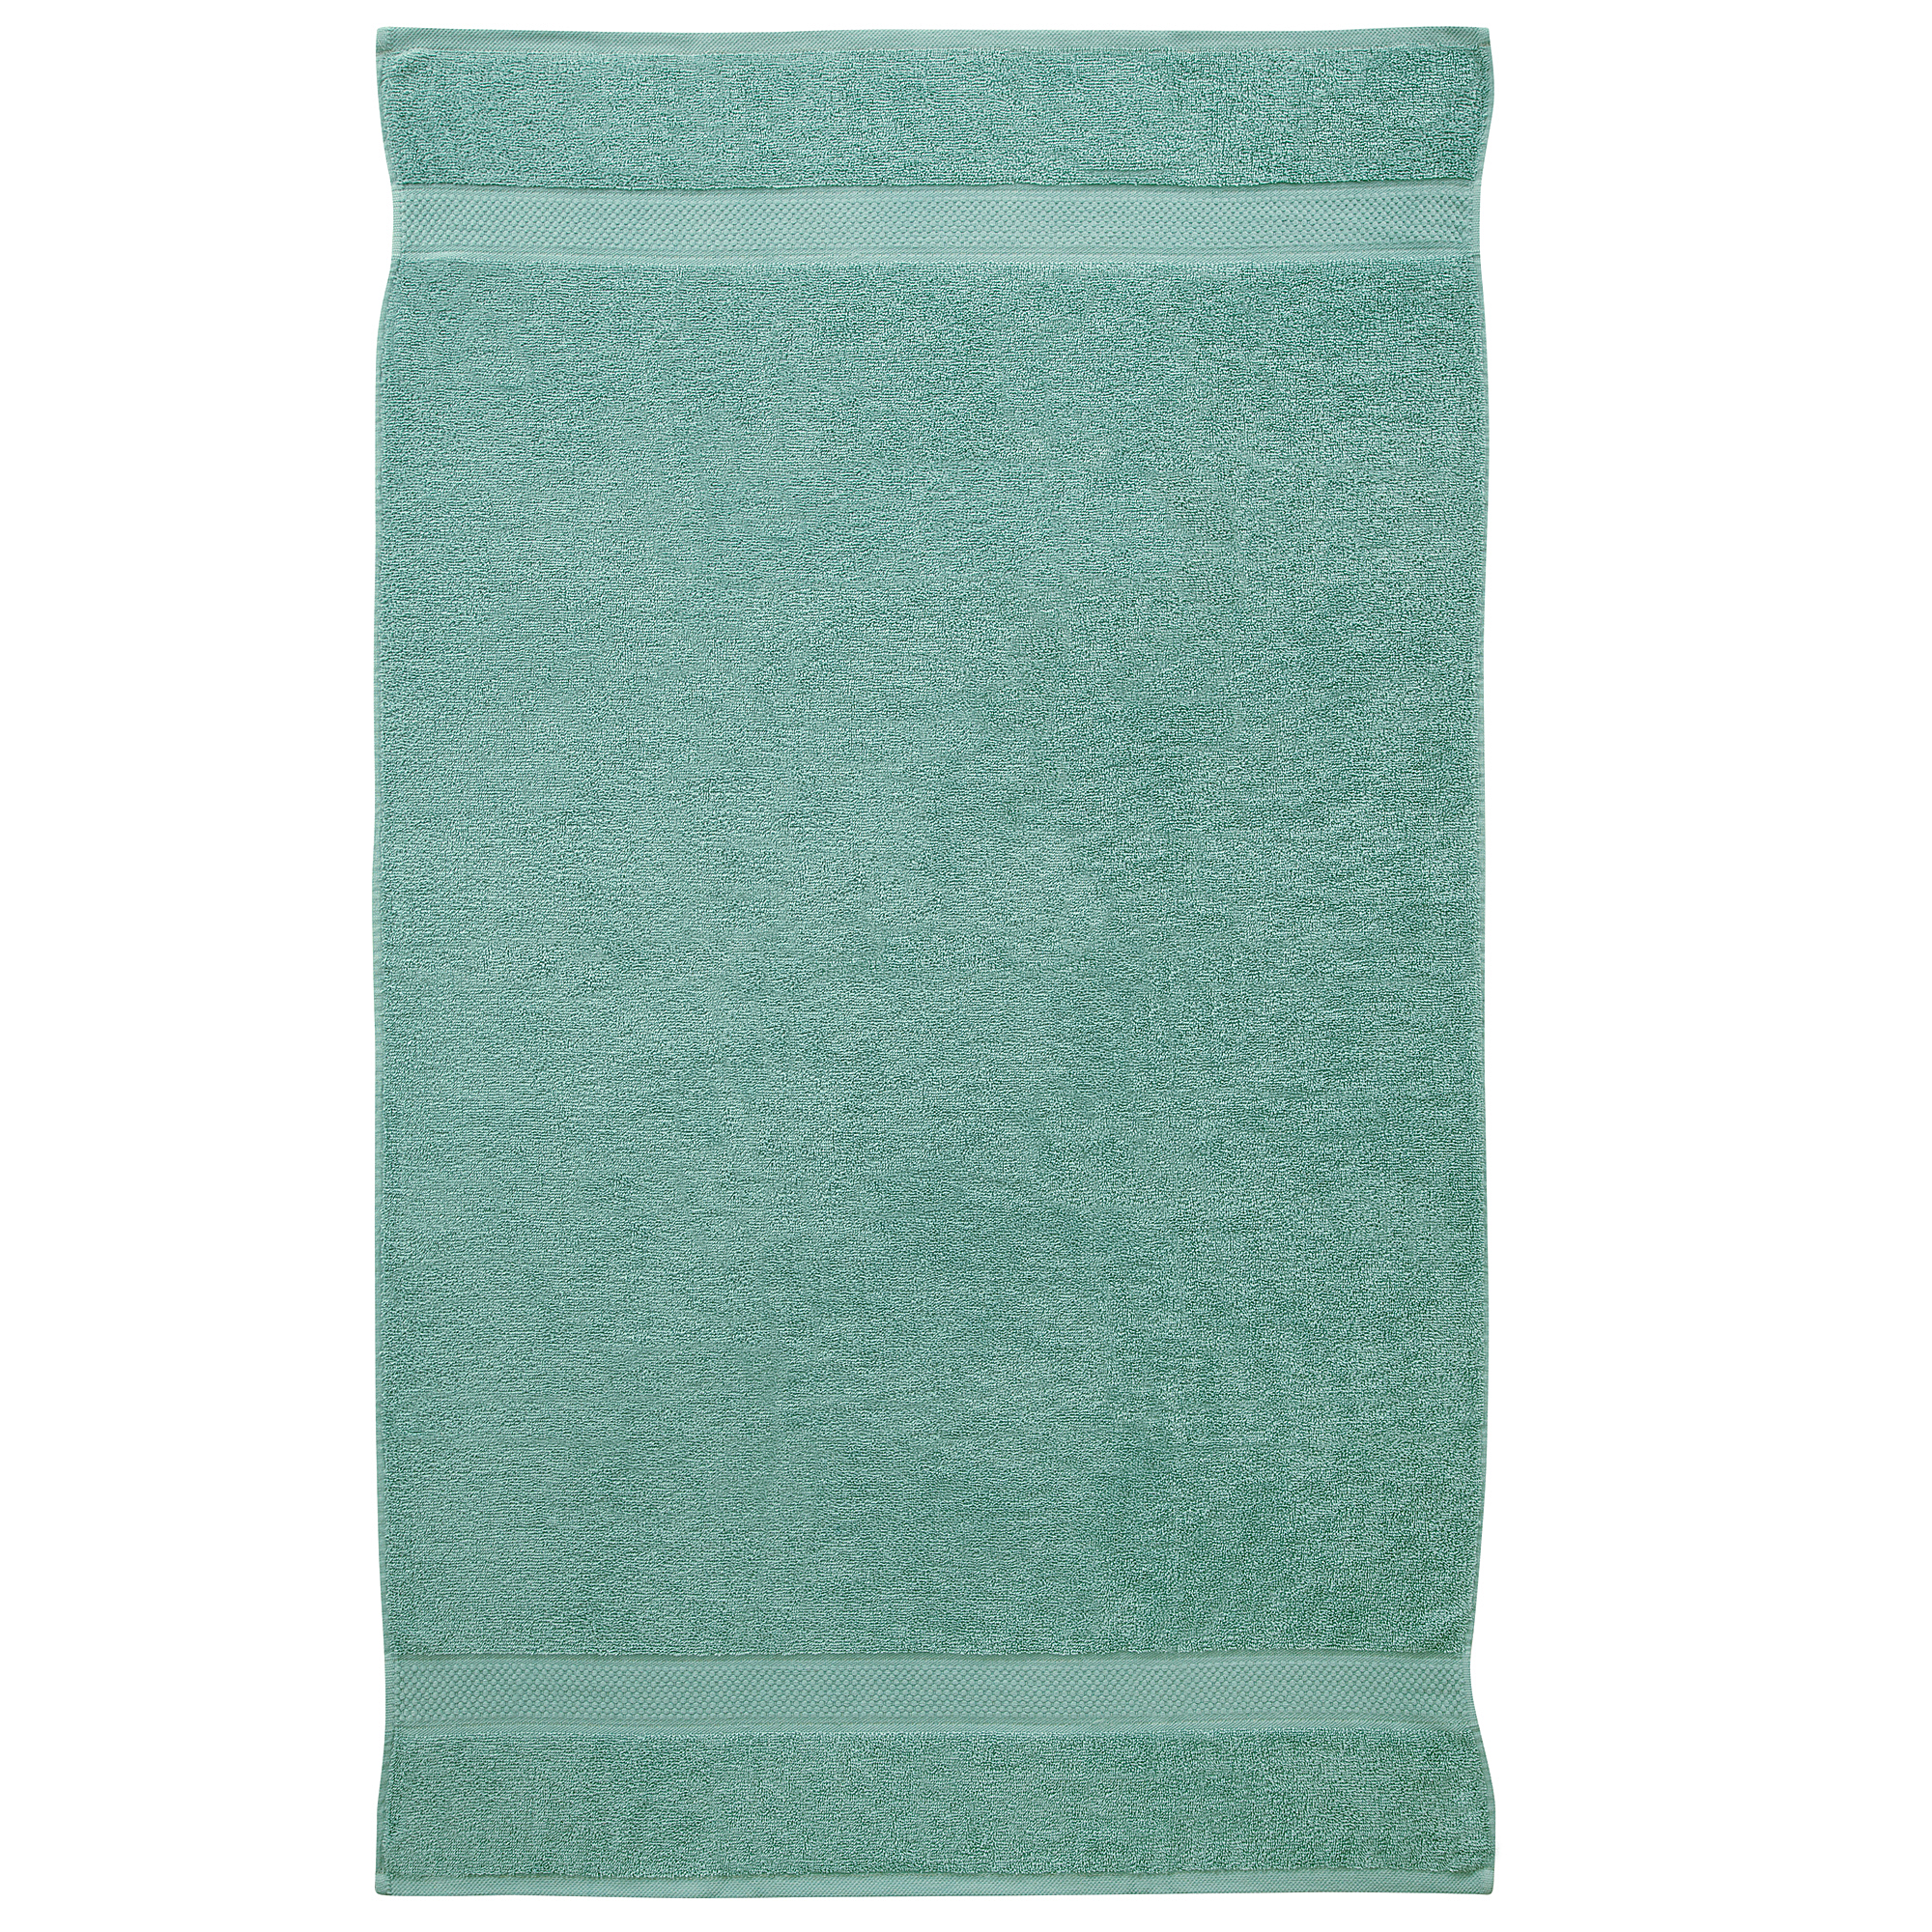 2 Pcs 100 % Cotton Premium Bath Sheet Towel Bale Duck Egg Plain Set